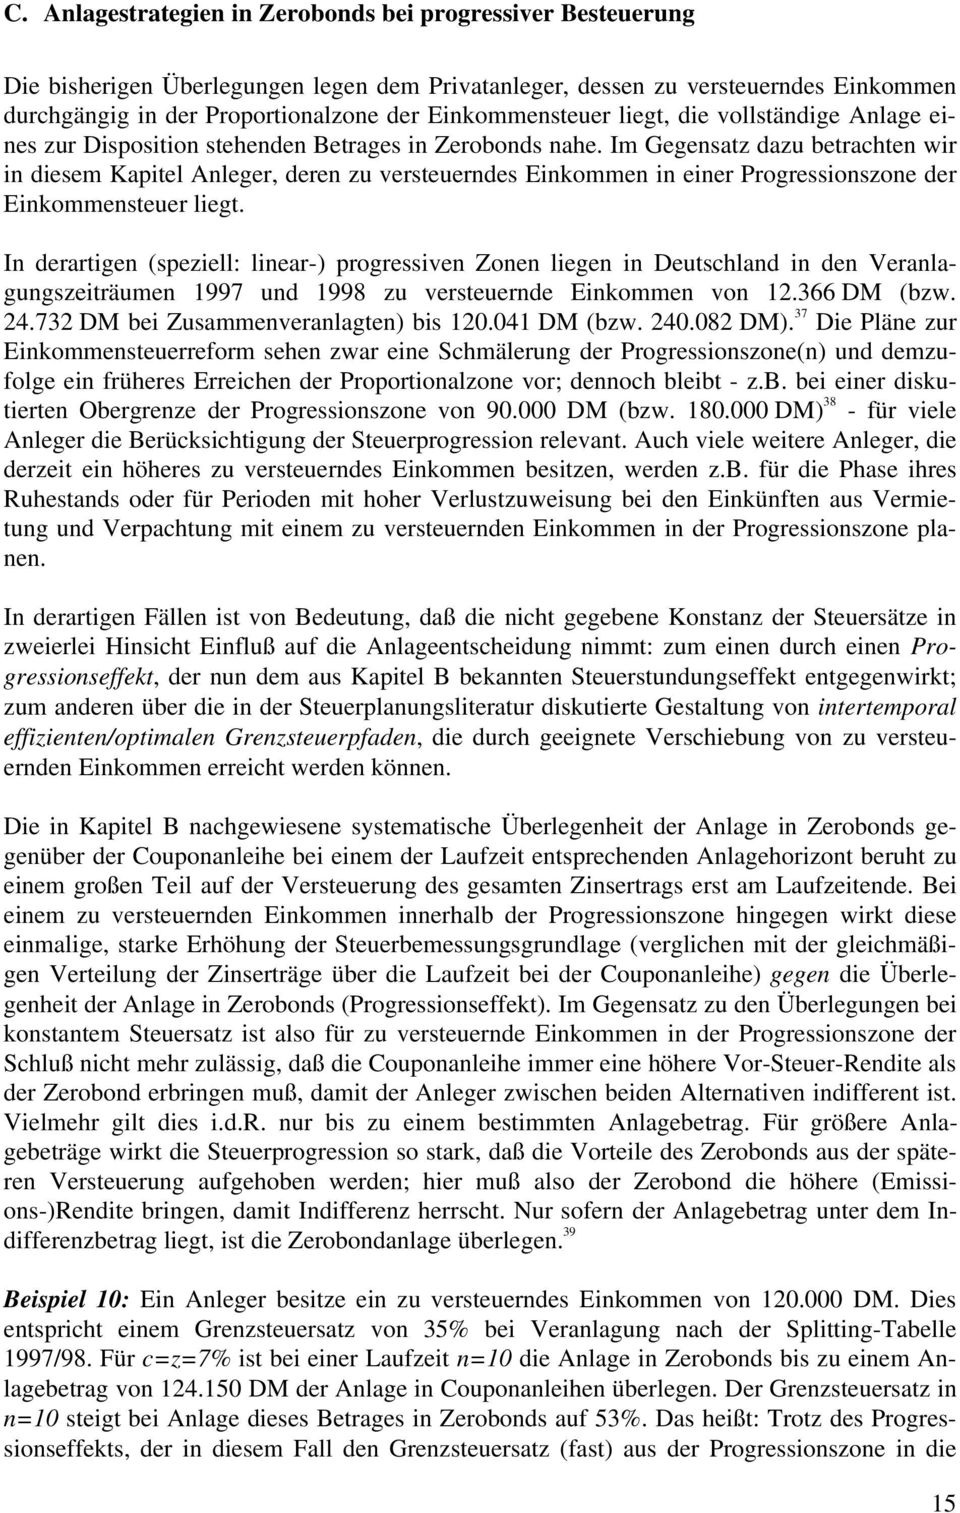 I derartige (spezie: iear-) progressive Zoe iege i Deutschad i de Veraagugszeiträume 1997 ud 1998 zu versteuerde ikomme vo 12.366 DM (bzw. 24.732 DM bei Zusammeveraagte) bis 120.041 DM (bzw. 240.